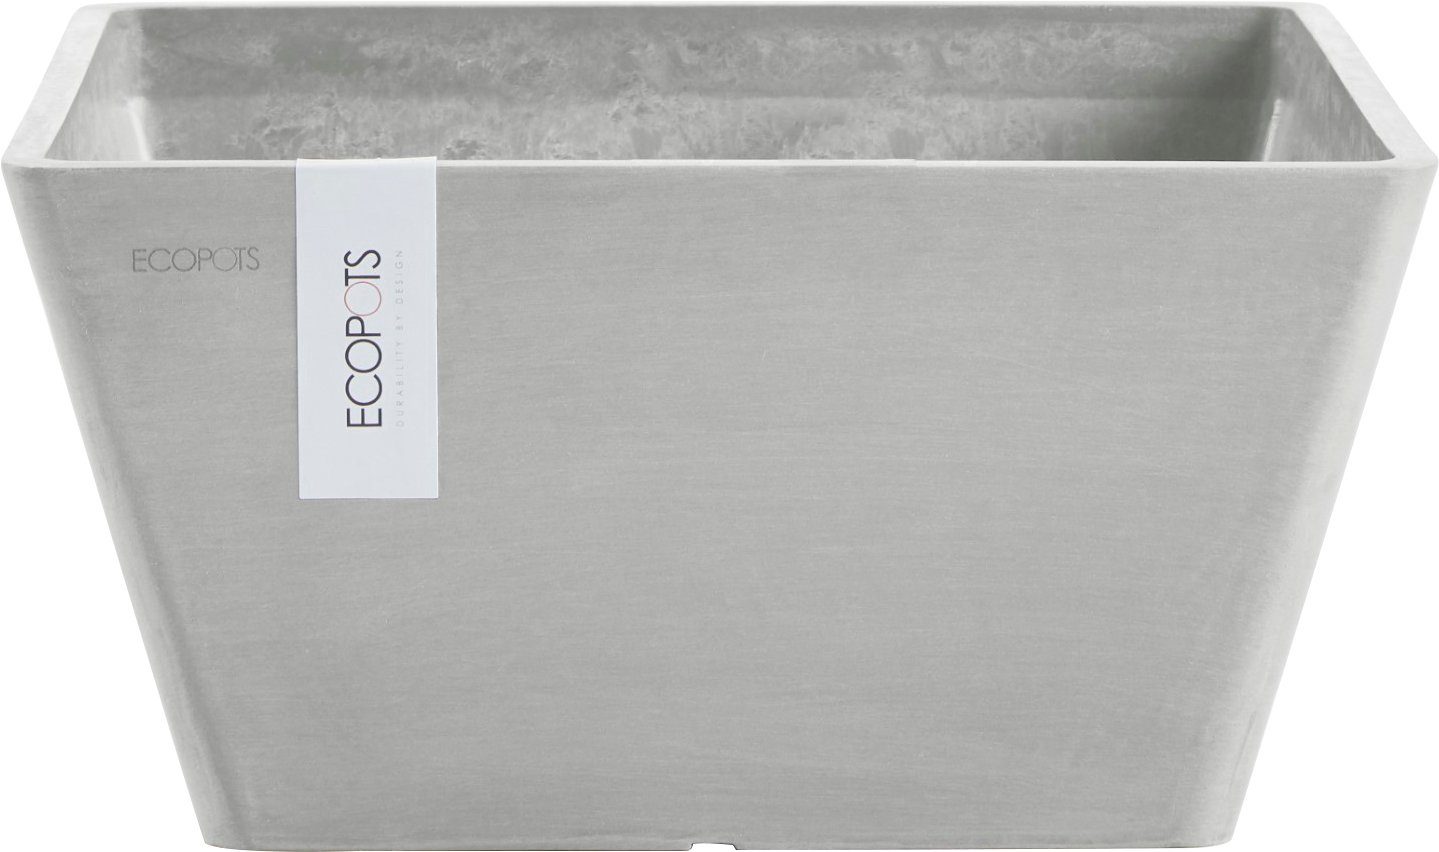 ECOPOTS Blumentopf BERLIN White Grey, BxTxH: 31x31x15,5 cm | Pflanzkübel